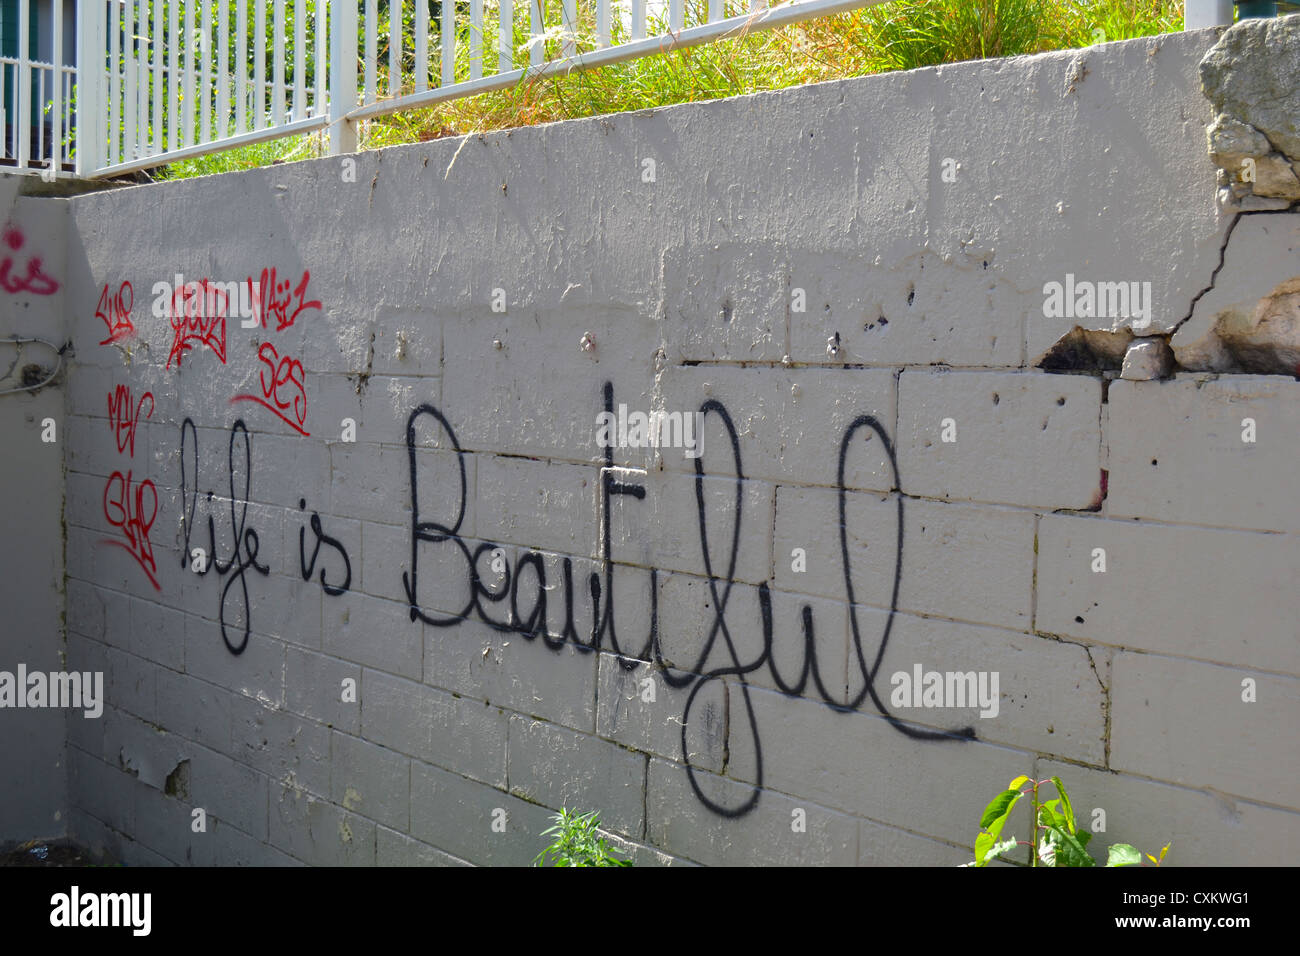 En anglais Graffiti sur un mur près de la Seine à Paris déclare : "La vie est belle". Banque D'Images